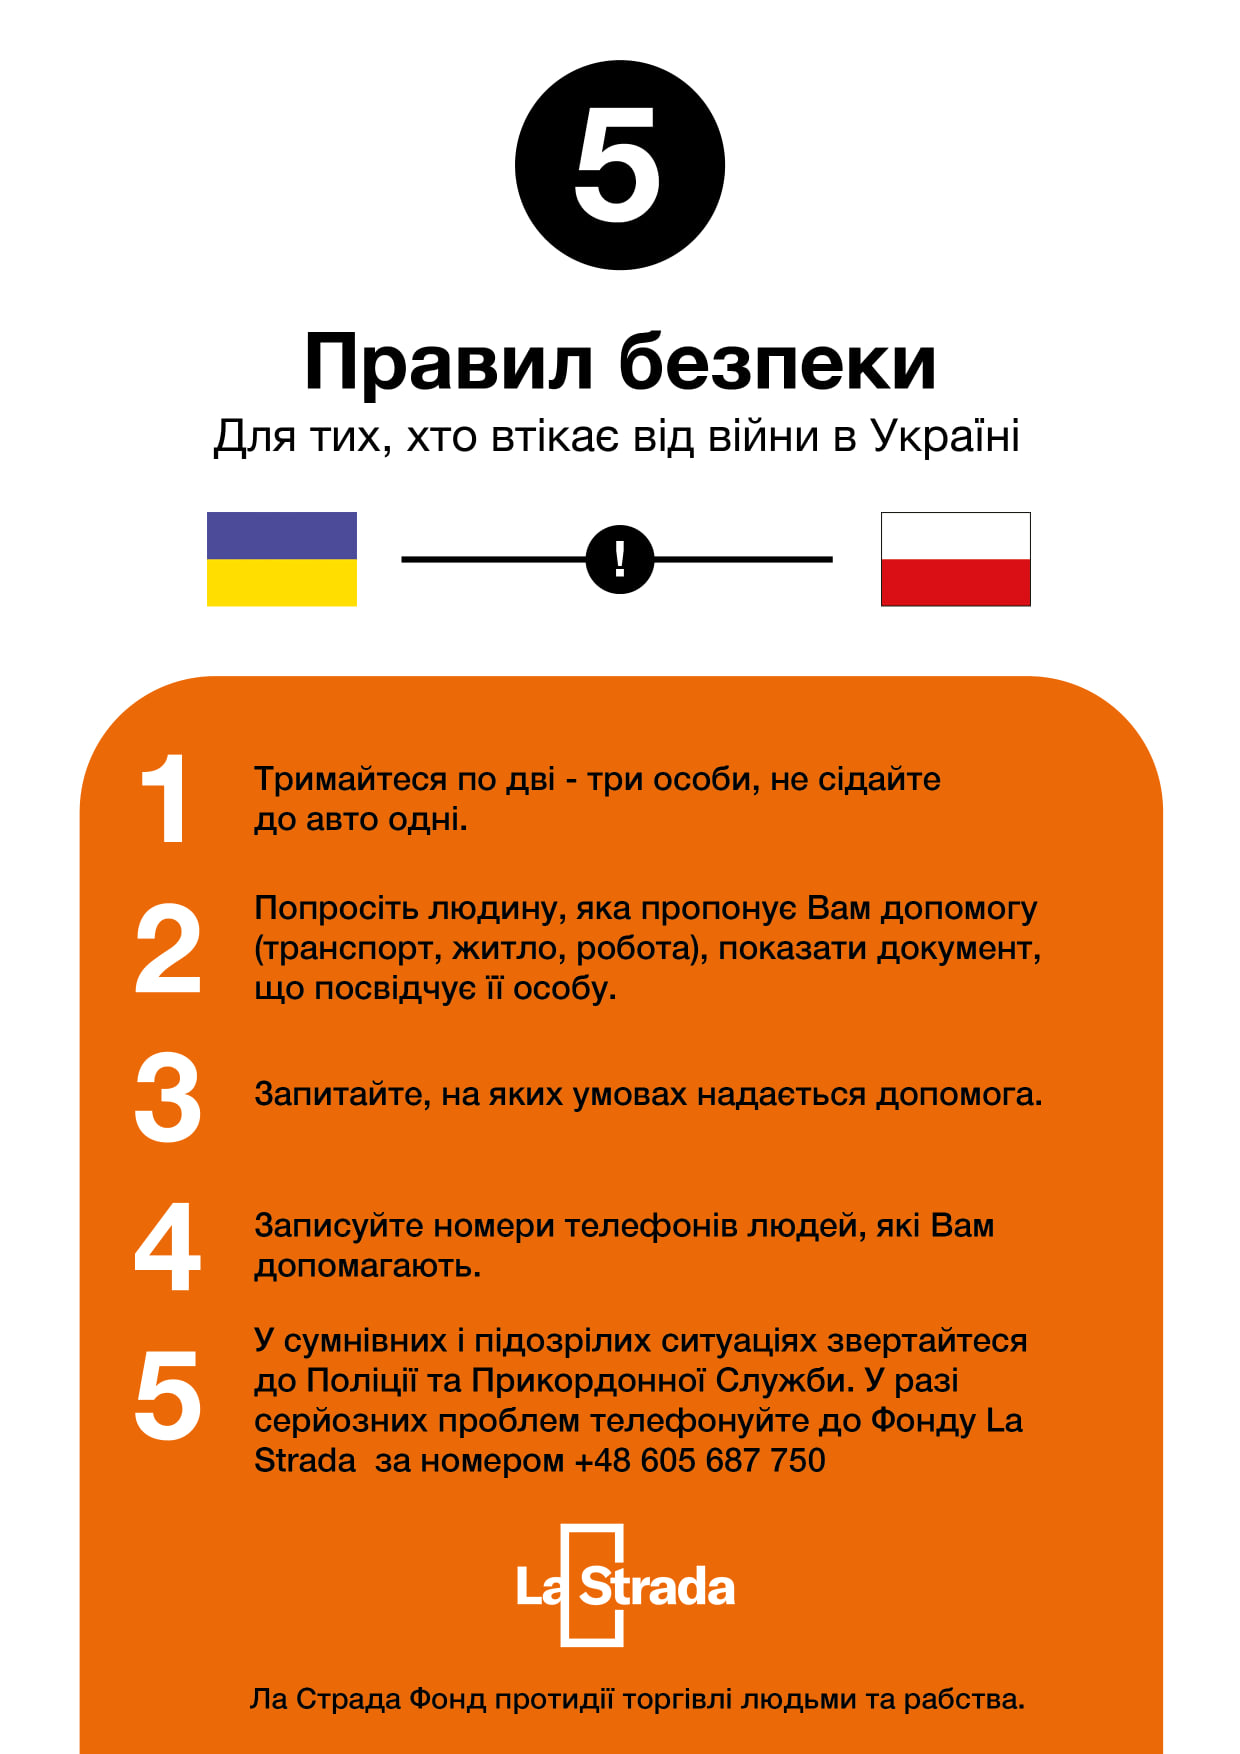 Ulotka w języku ukraińskim z zasadami bezpieczeństwa dla uciekjących przed wojną